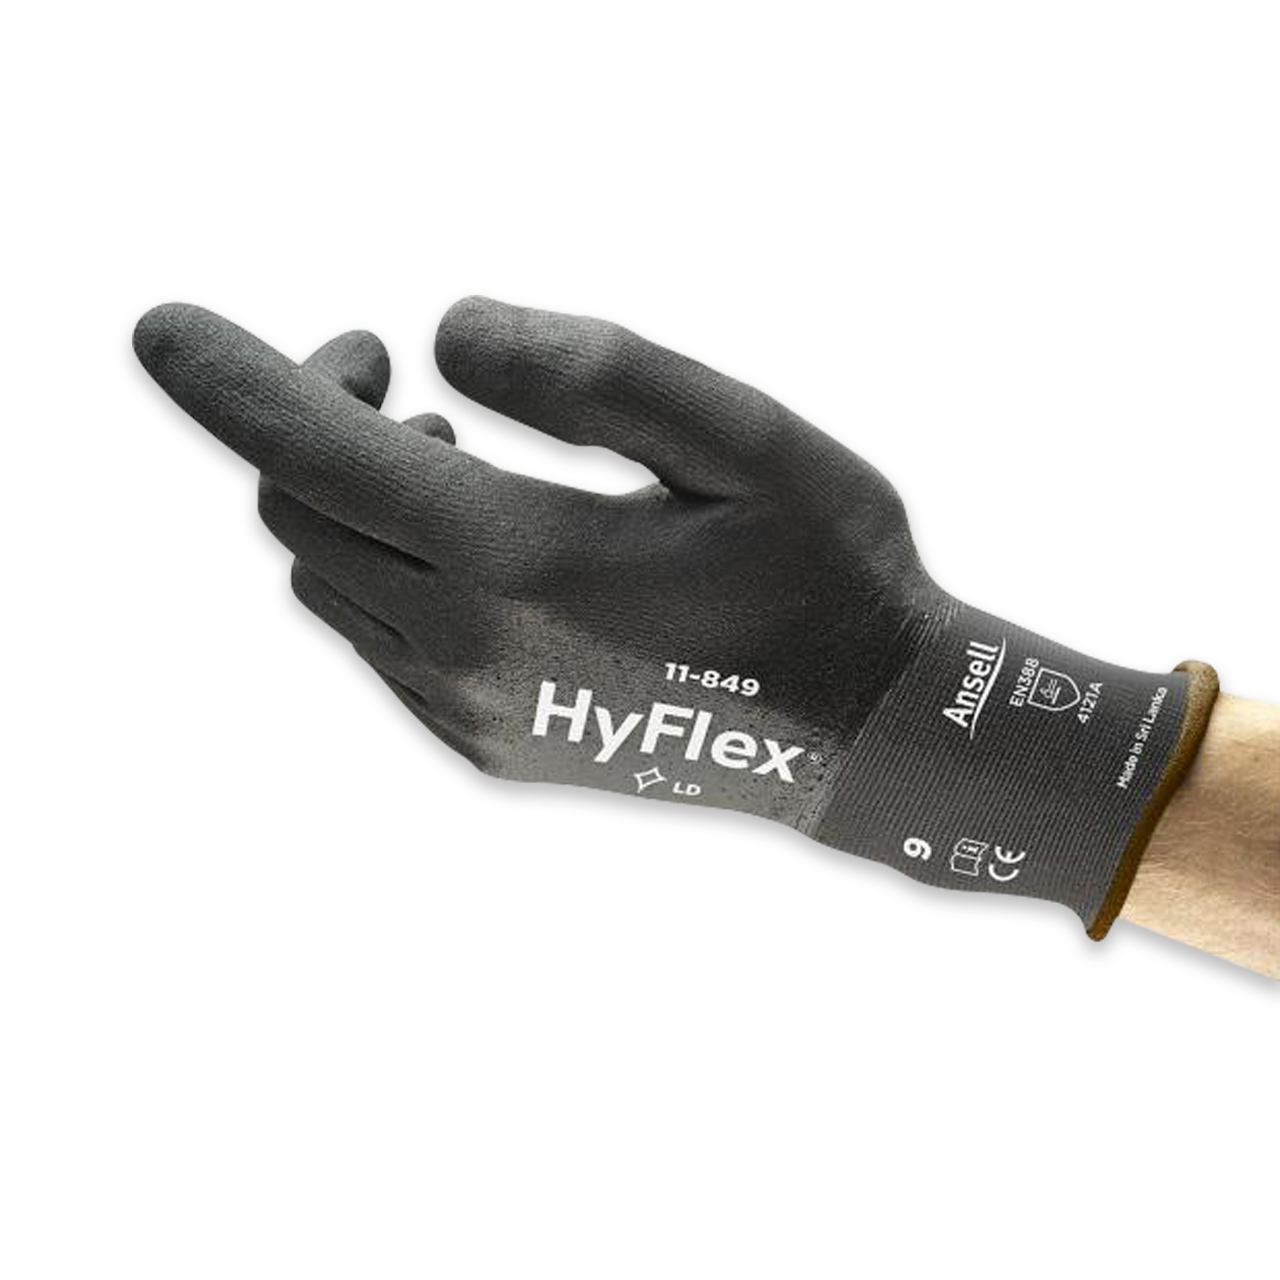 HyFlex® 11-849 XL